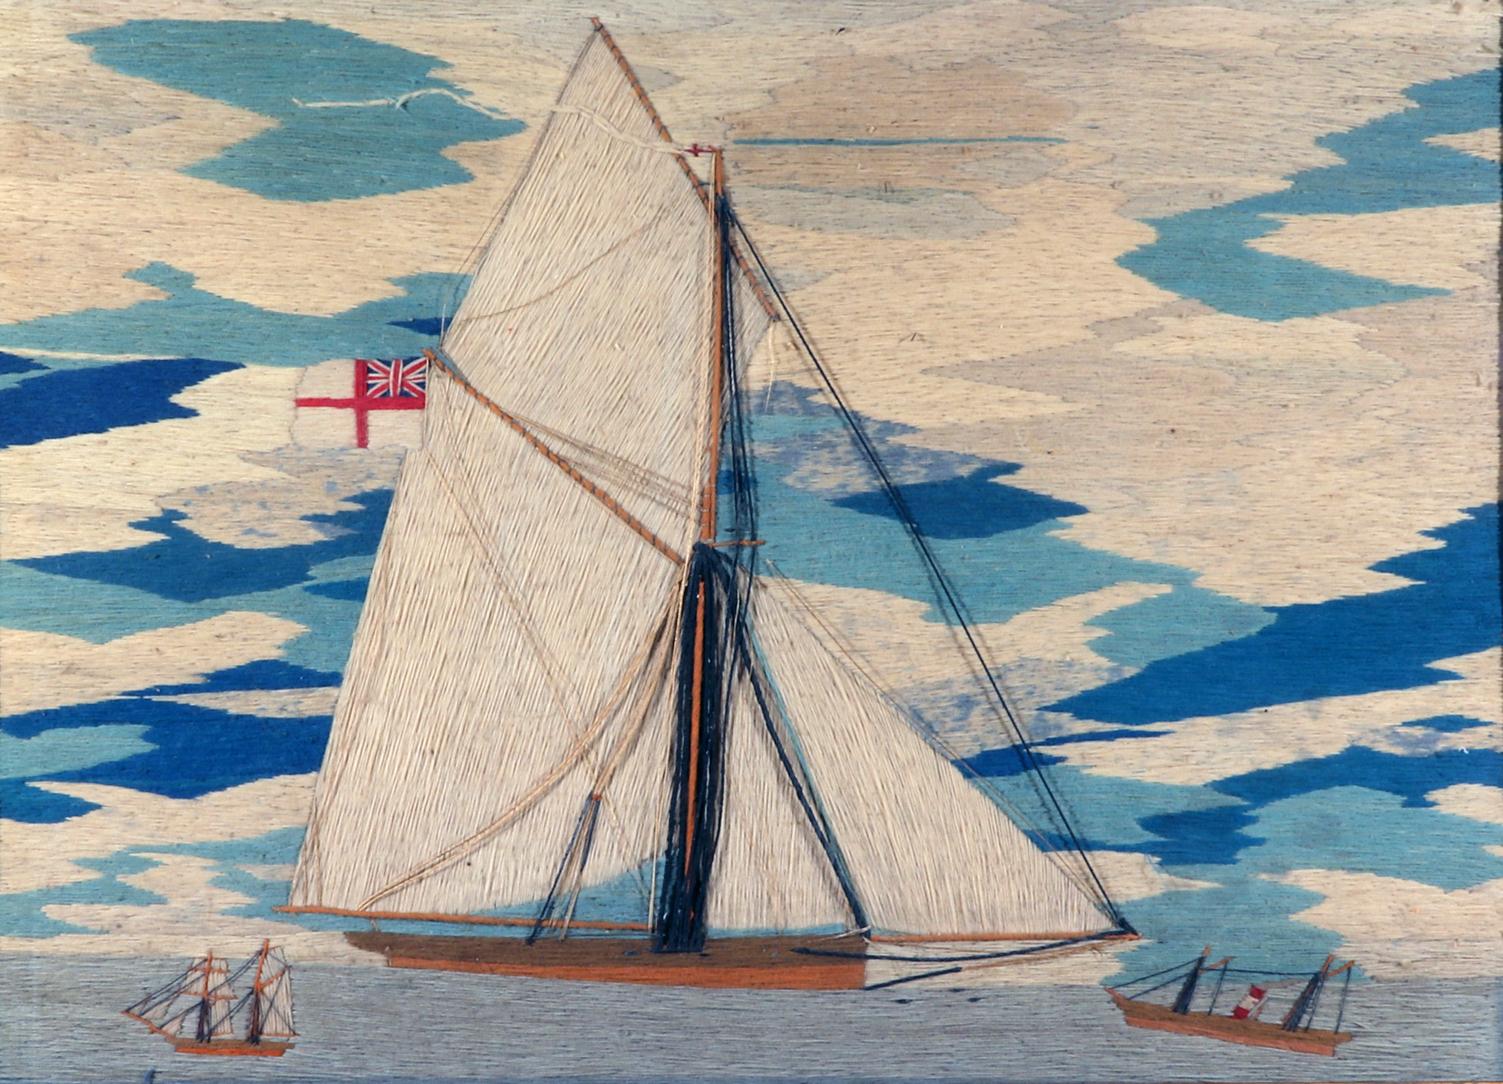 Seemannsgarn Woolie von Gaffel-getakelter Schaluppe,
CIRCA 1870

Das britische Seemannsbild zeigt die Steuerbordseite einer gaffelgetakelten Schaluppe unter vollen Segeln vor einem wolkenverhangenen Himmel mit Streifen verschiedener Blautöne